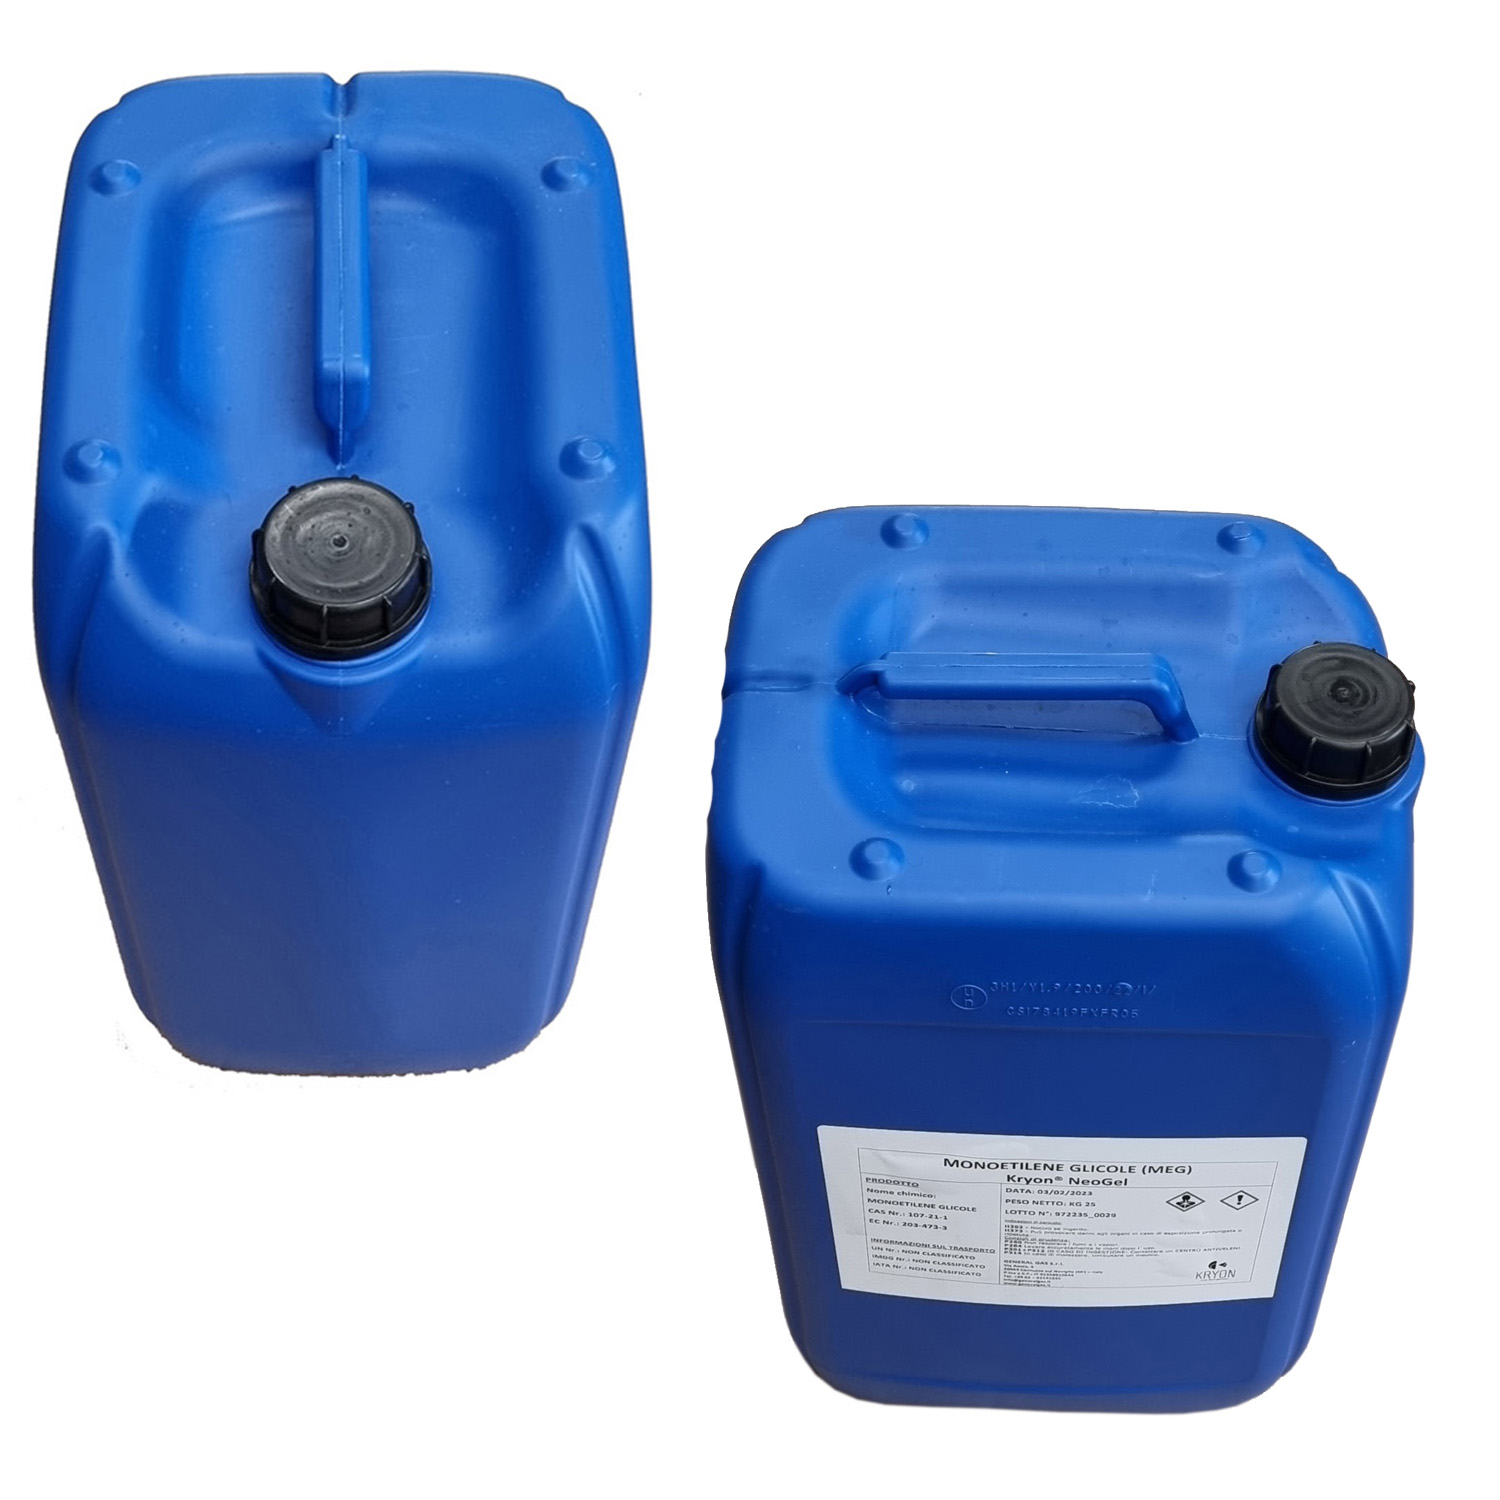 Kryon® NeoGel - Glicole Etilenico Inibito (MEG) - in tanica 25 Kg (colorato blu)